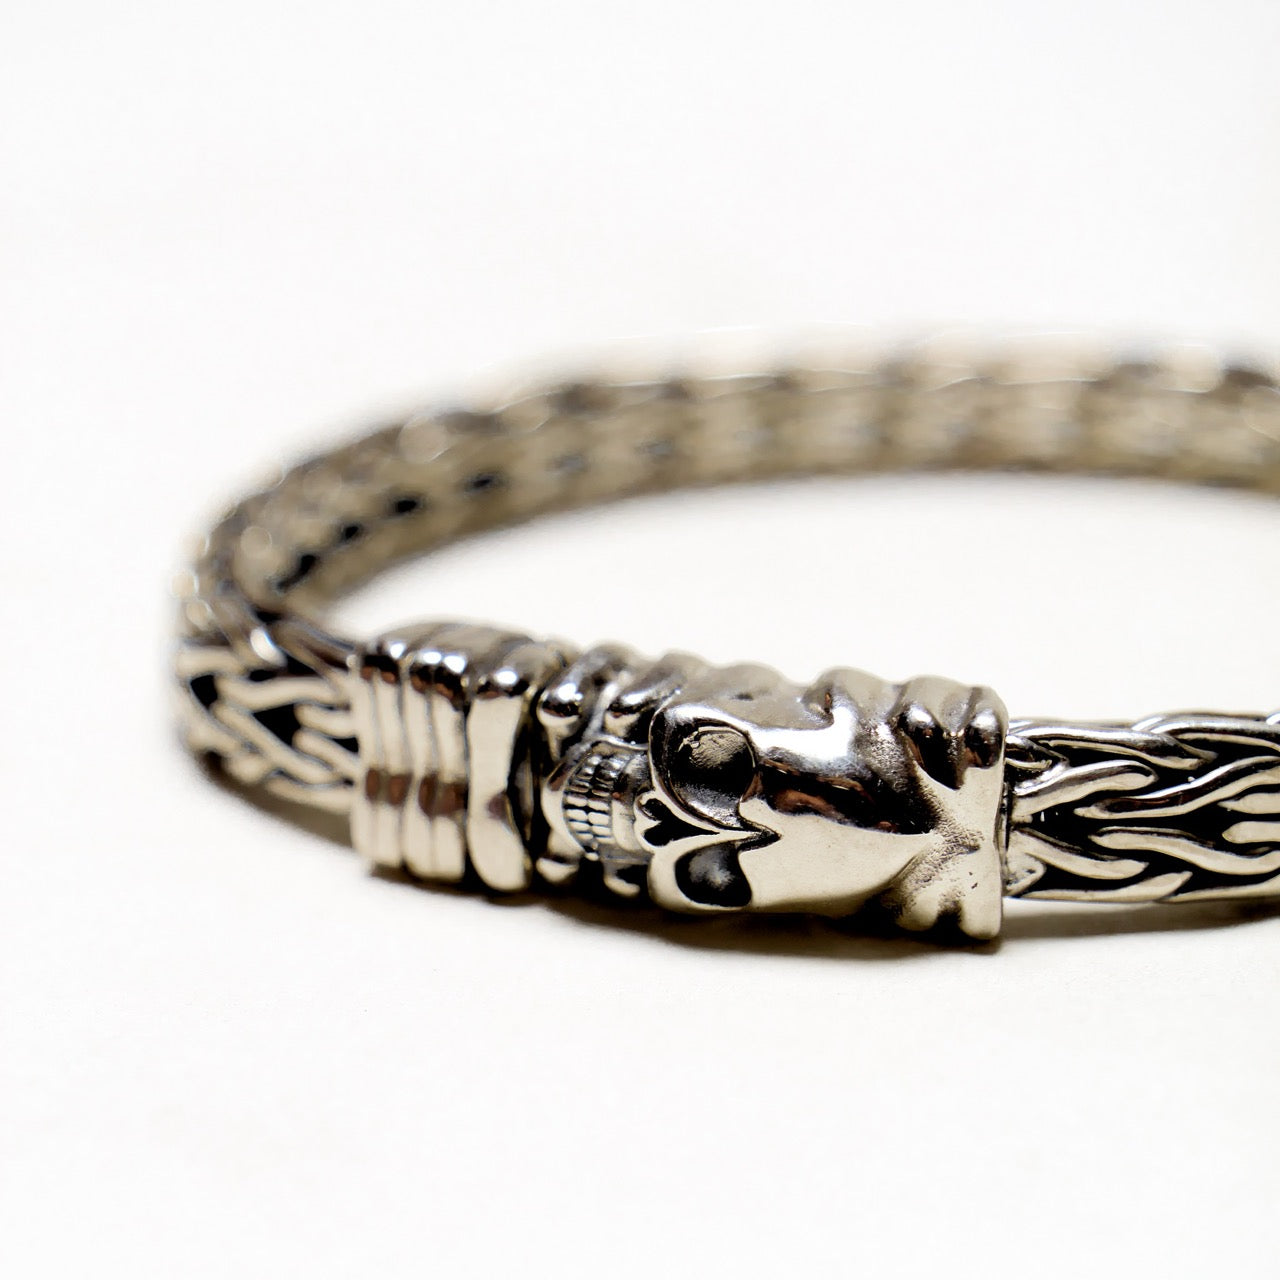 Skull Foxtail Chain Bracelet in Sterling Silver